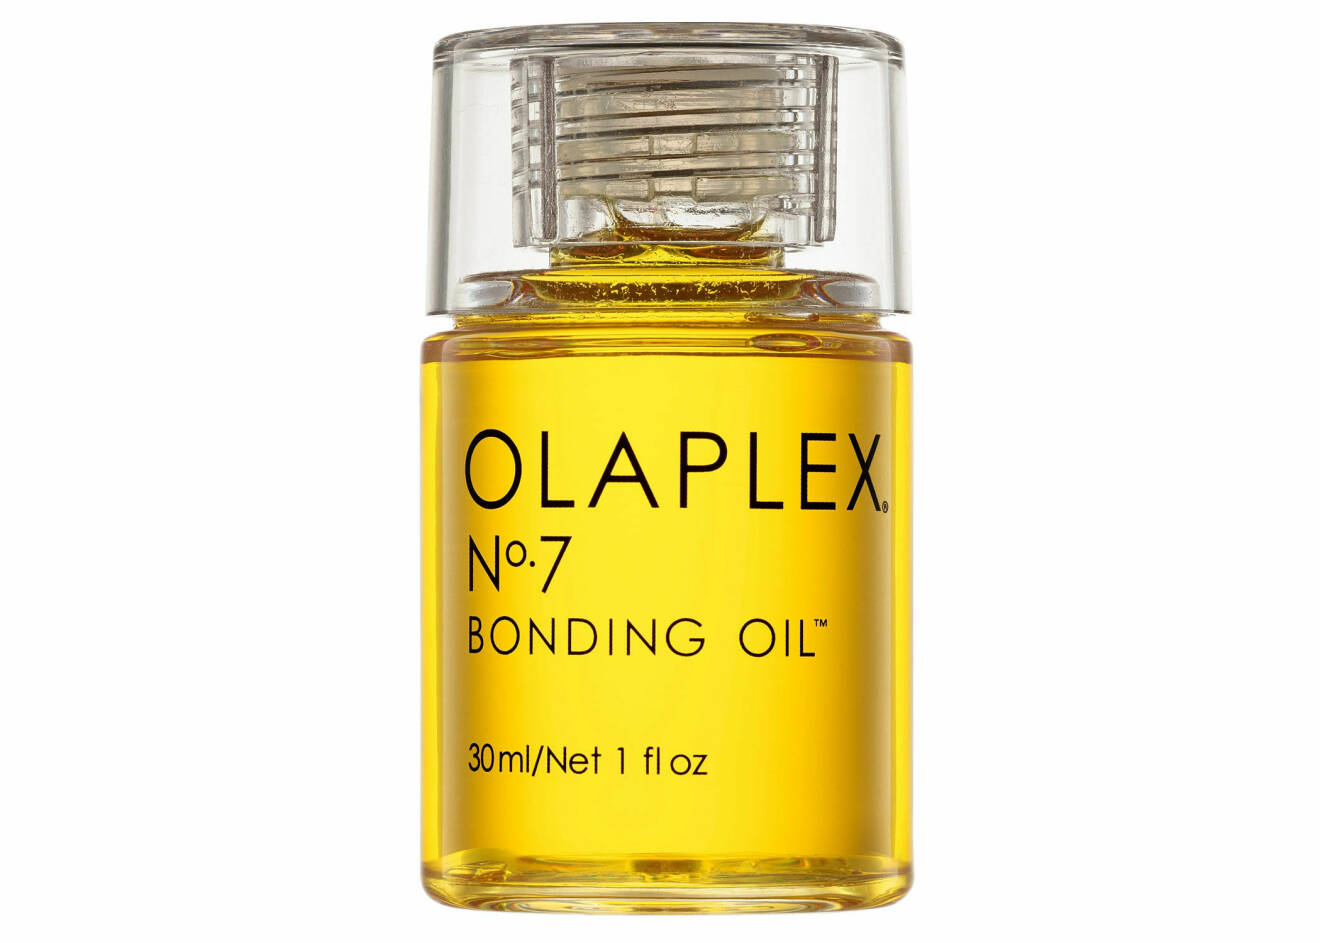 N° 7 Bonding Oil från Olaplex.